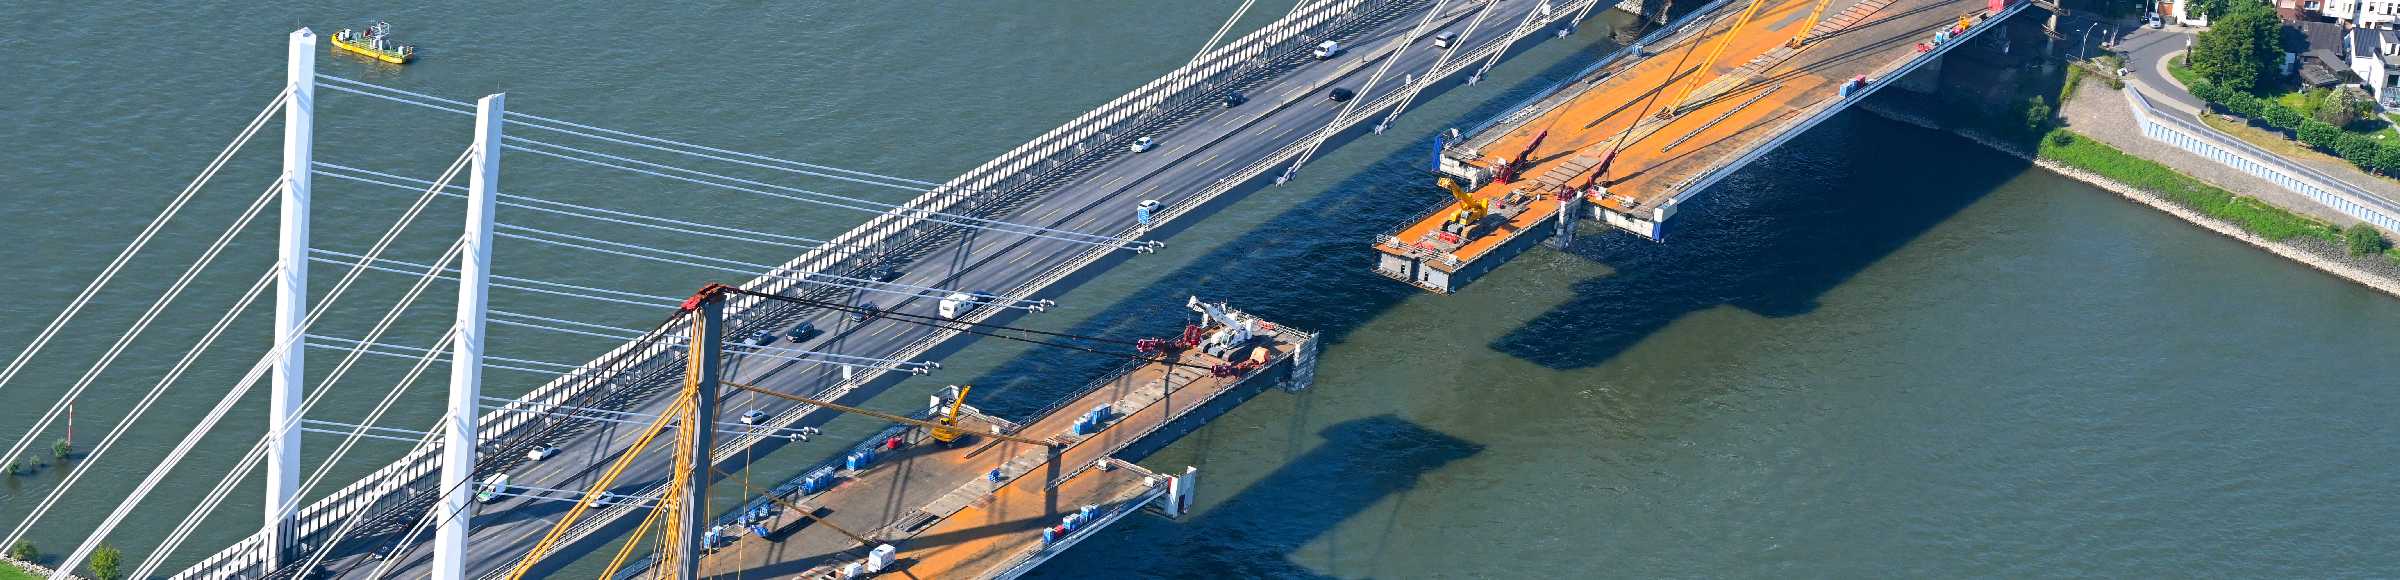 Baustelle zum Sanierung und Instandsetzung der Autobahnbrücke BAB A40 